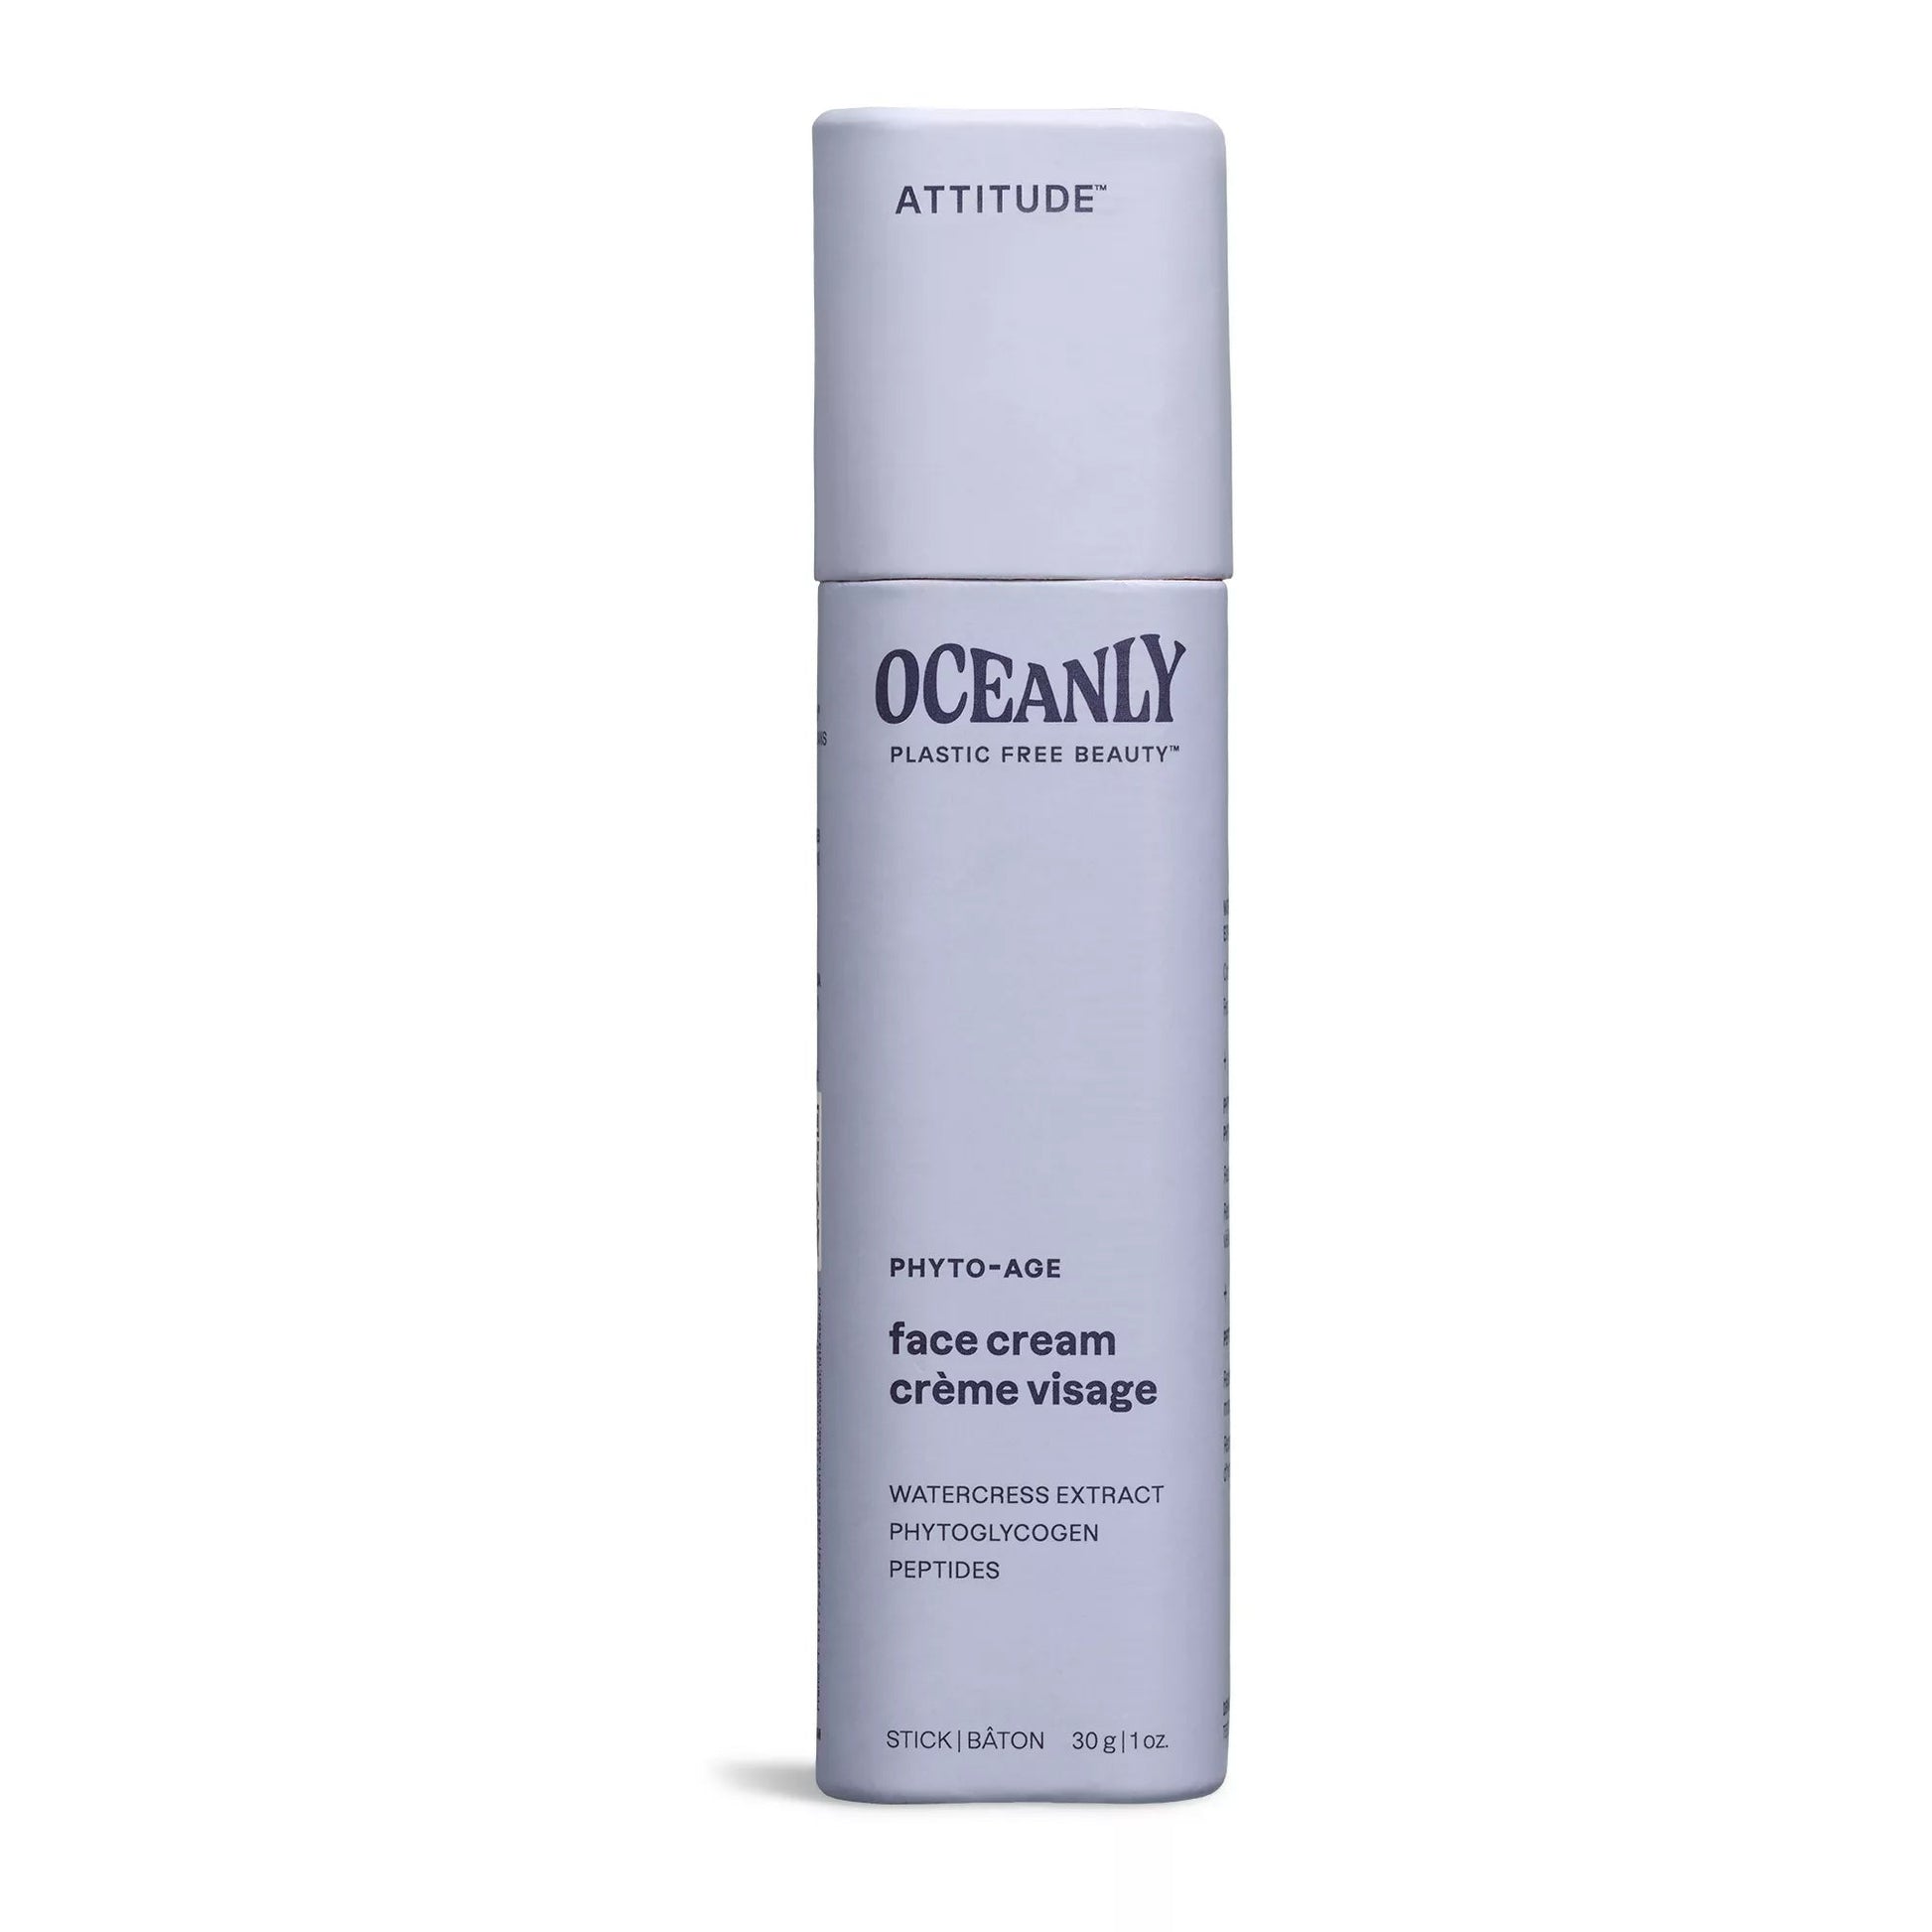 ATTITUDE Oceanly Phyto-Age Face Cream Unscented 30g 16053_en?_main?